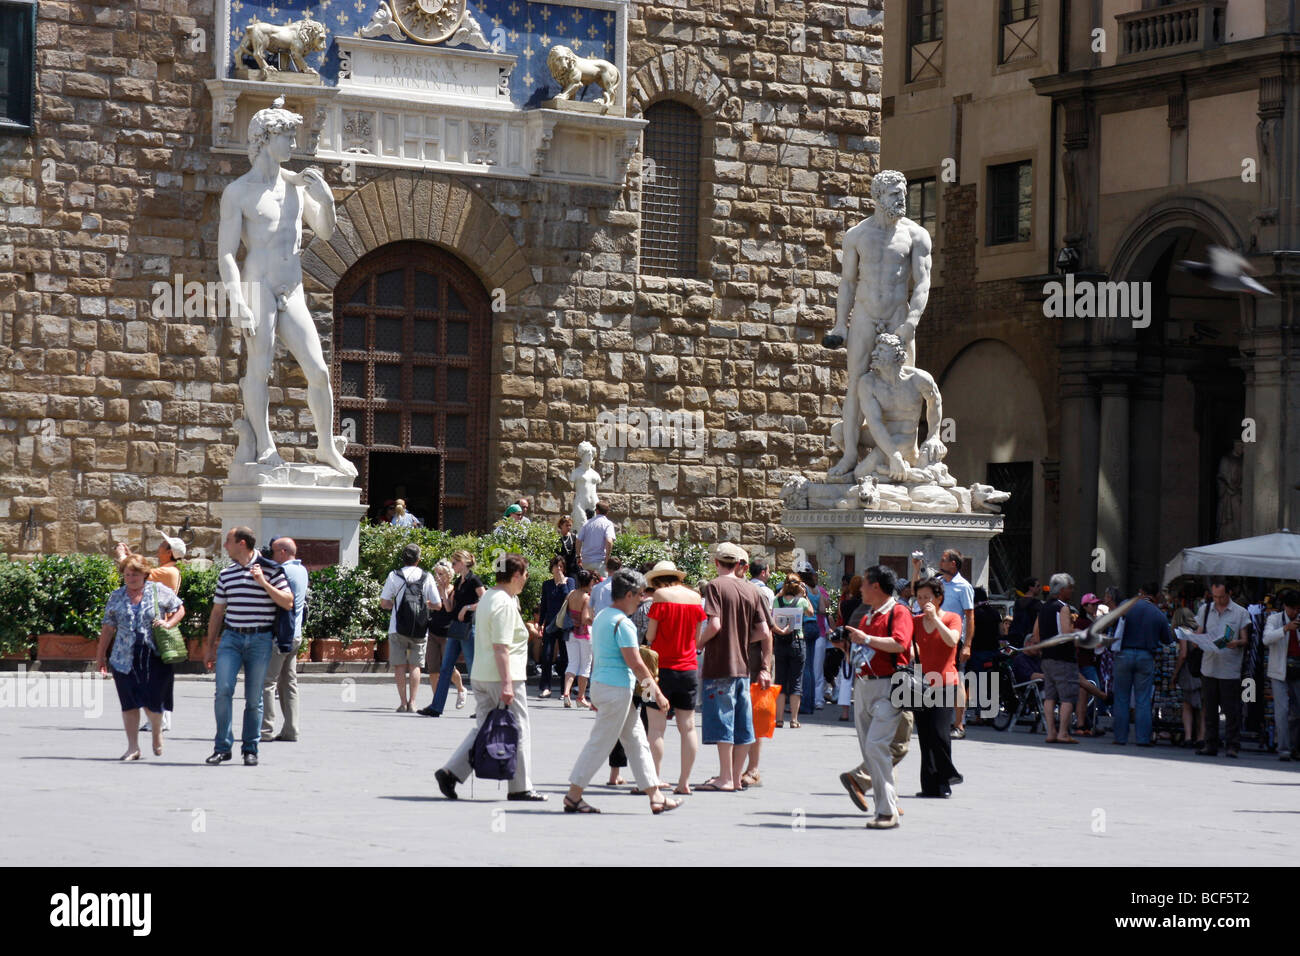 Statue de Neptune dans une fontaine entourée de nymphes de marbre blanc dans la Piazza della Signoria, Florence Banque D'Images